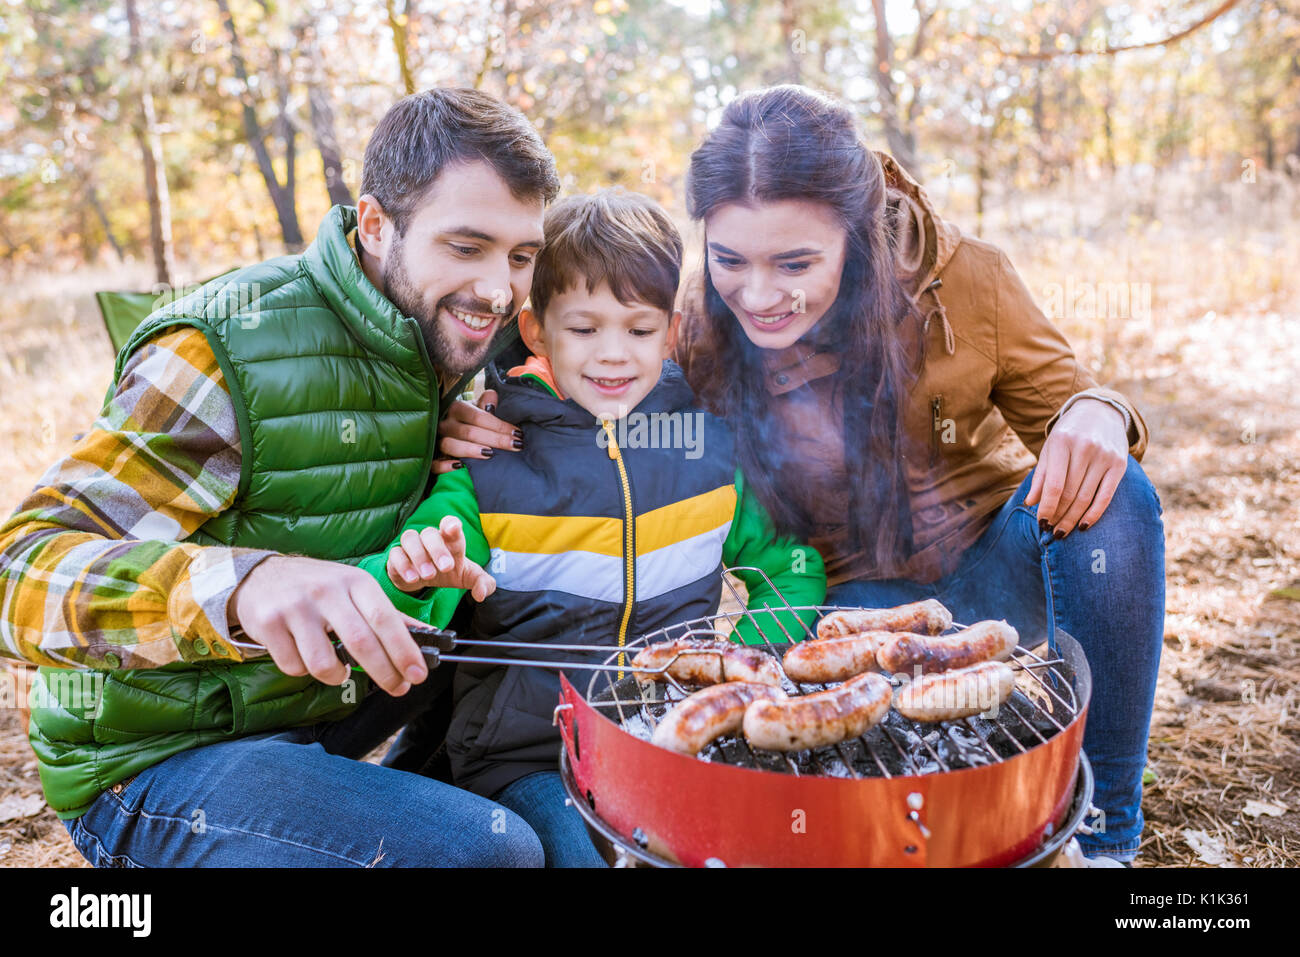 Fröhliche Eltern mit niedlichen kleinen Sohn grillen Würstchen auf Grill im  Herbst Park Stockfotografie - Alamy